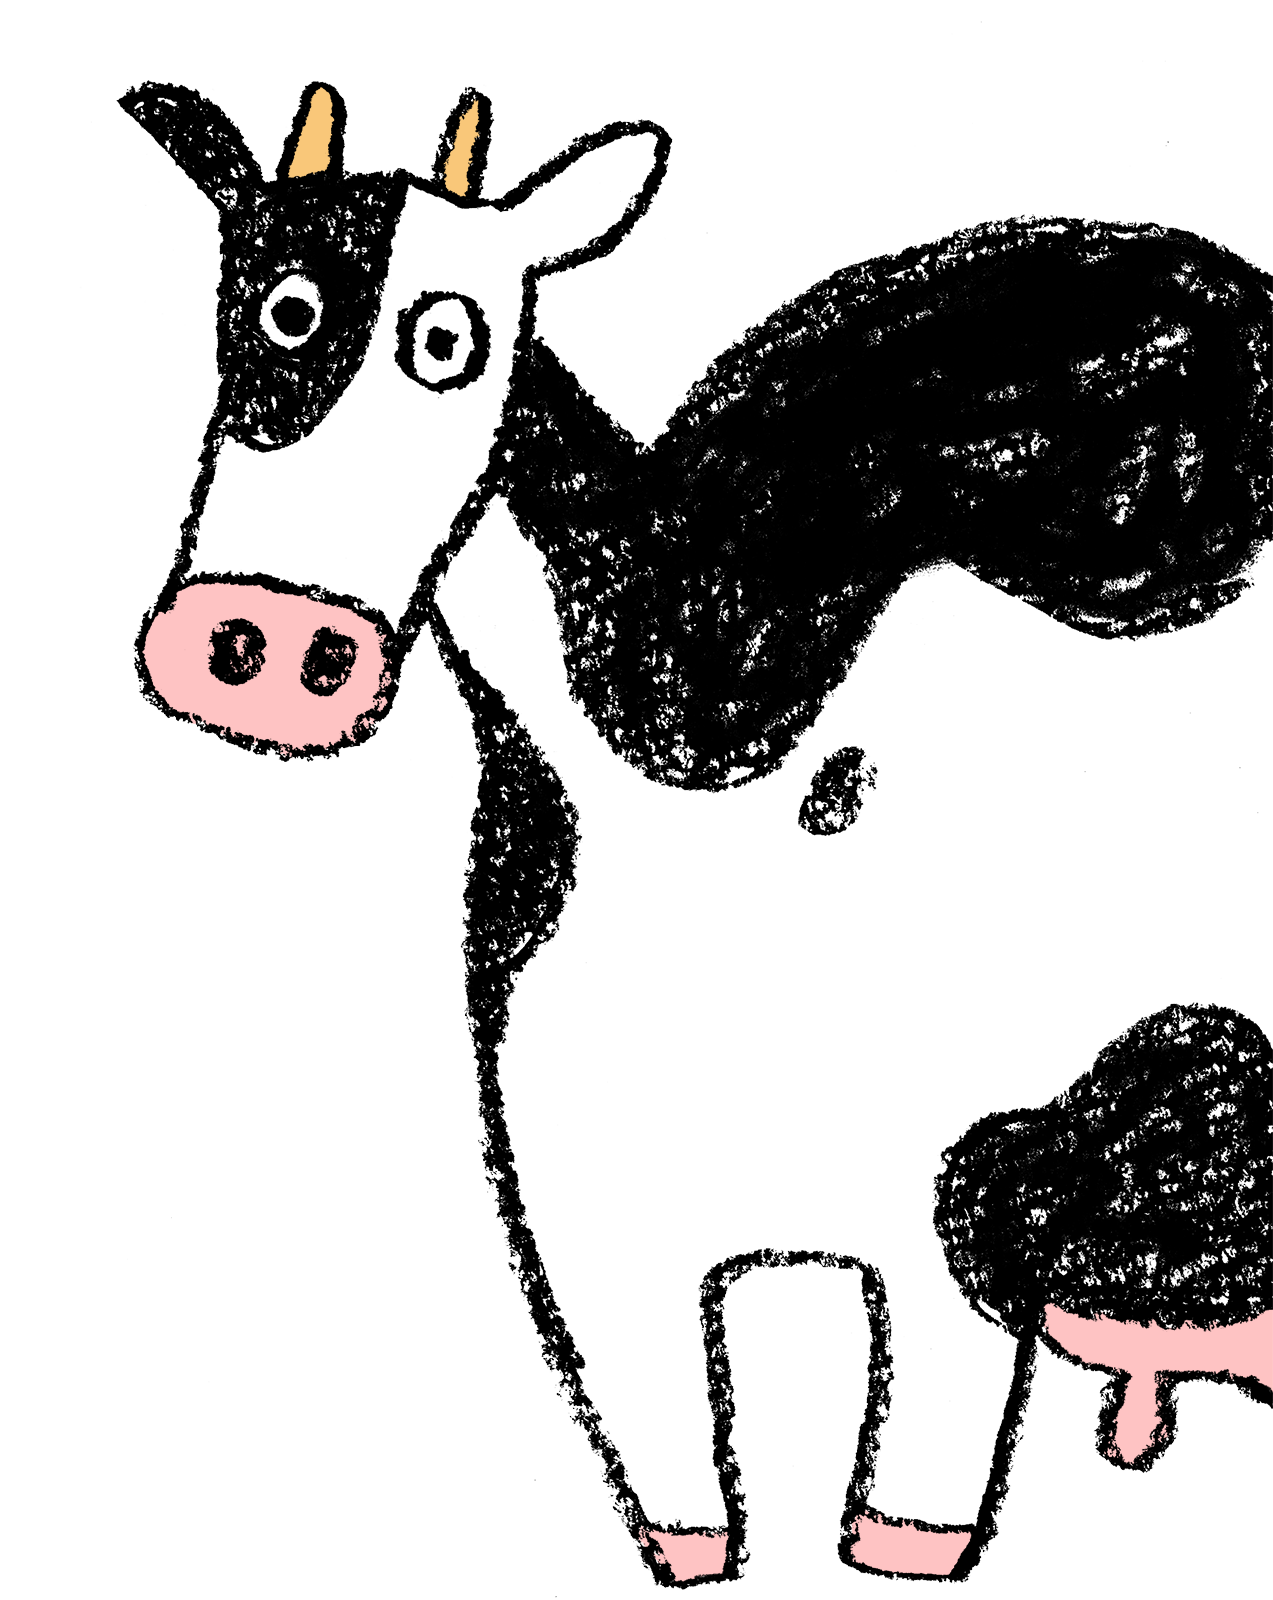 ゆるかわいい丑のイラスト 21年干支 横向き 乳牛 えんぴつと画用紙